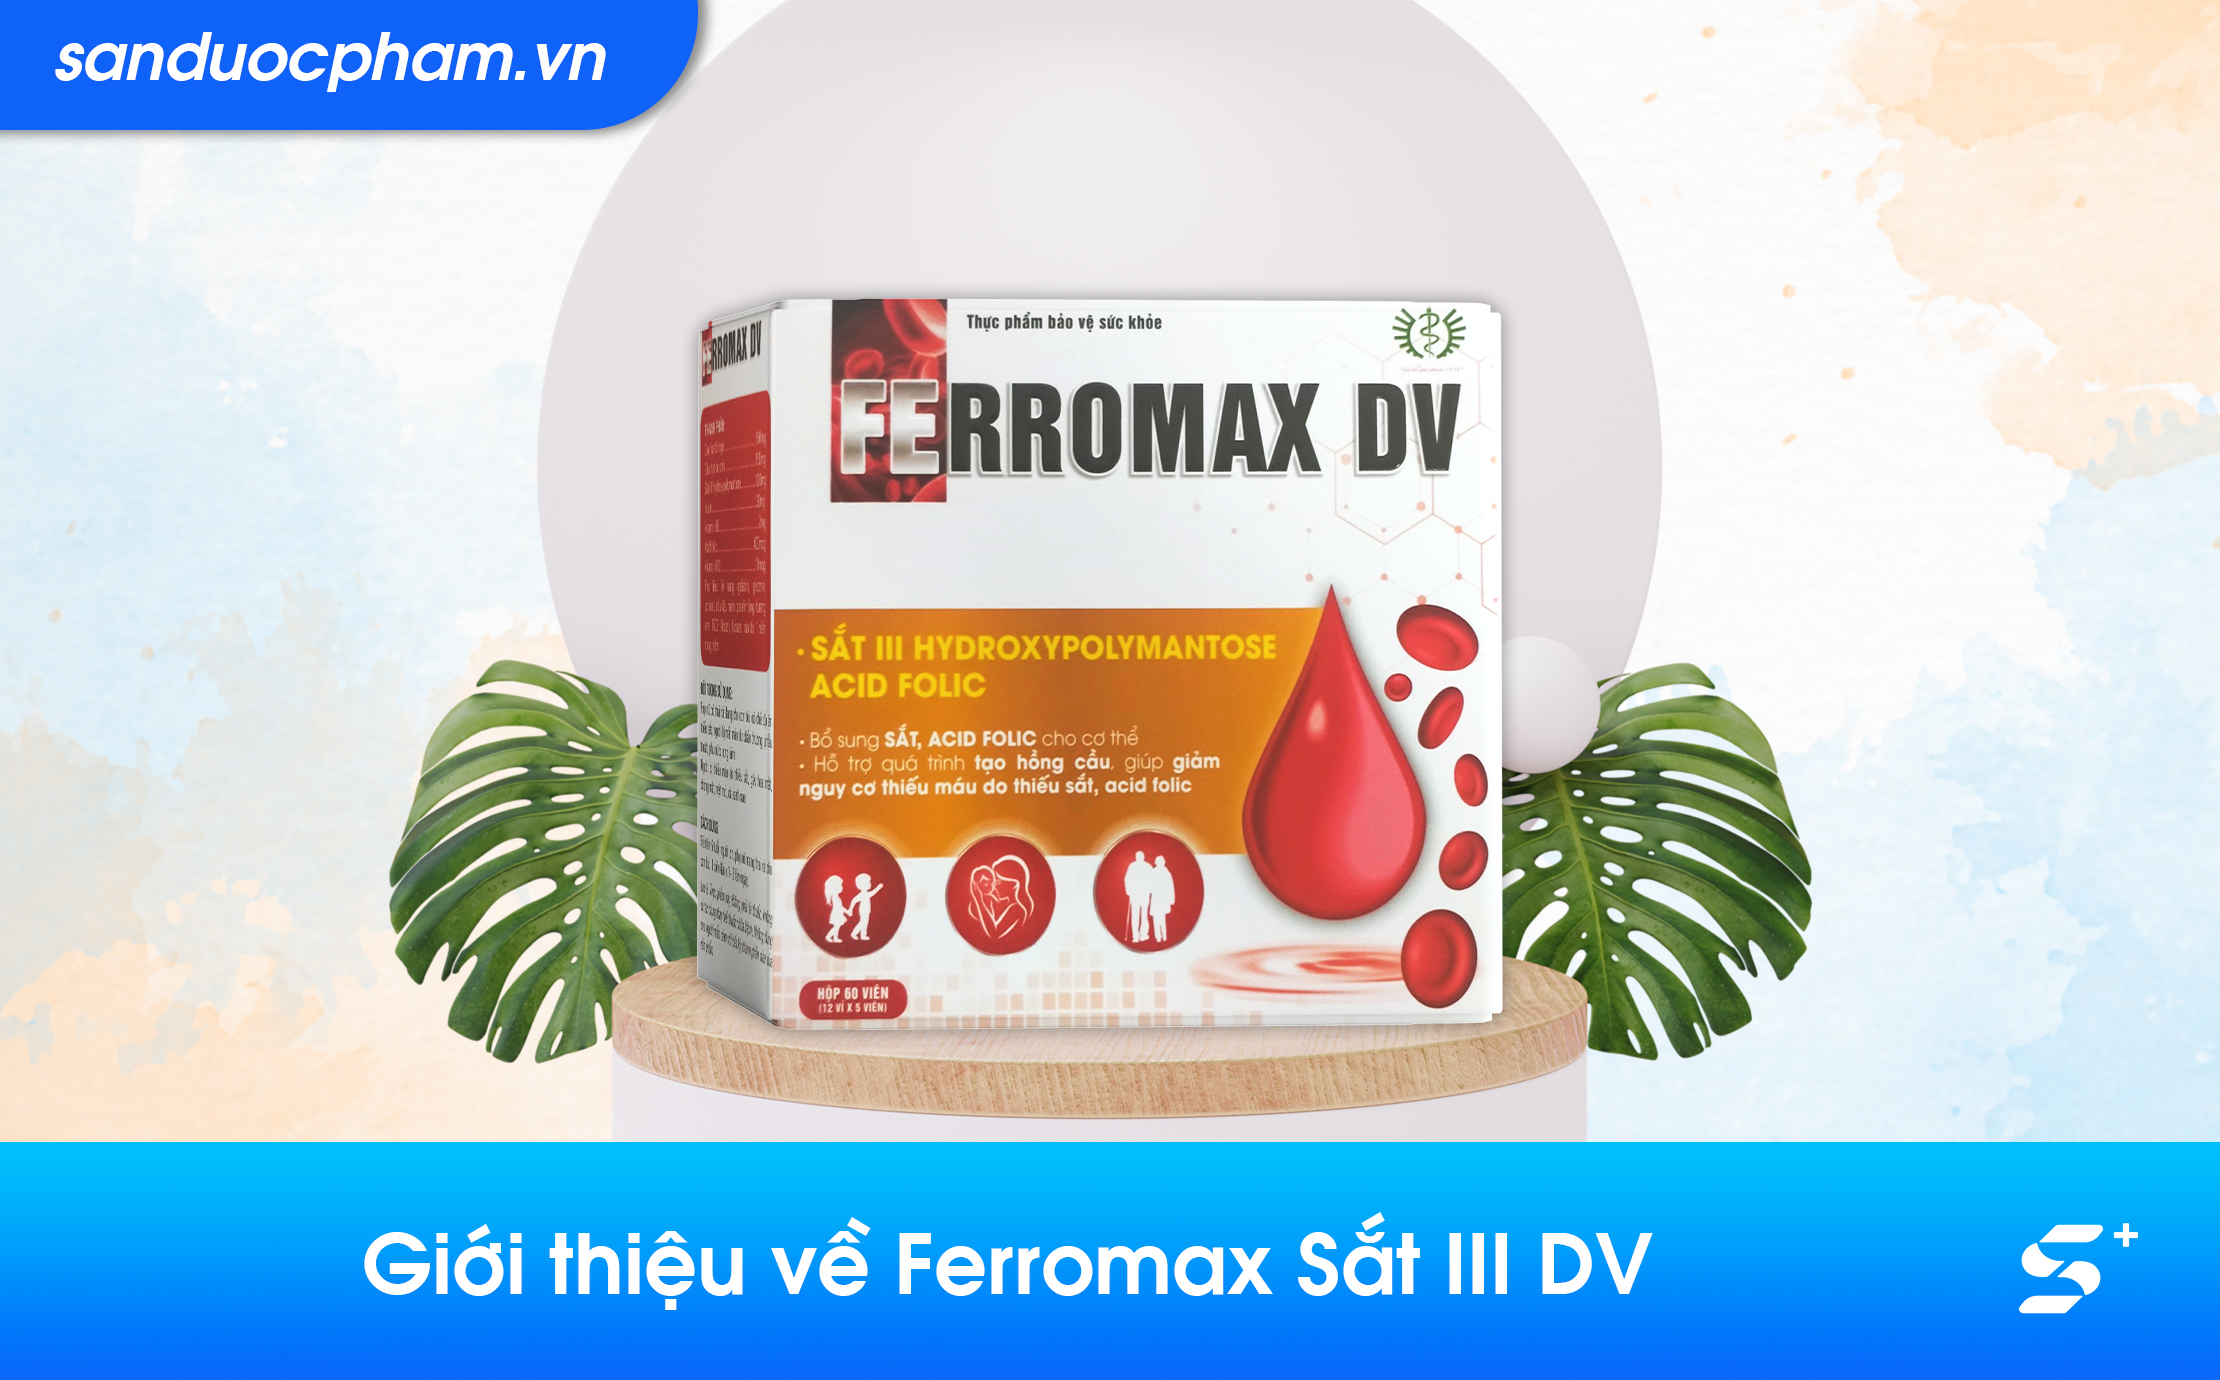 Giới thiệu về Ferromax Sắt III DV